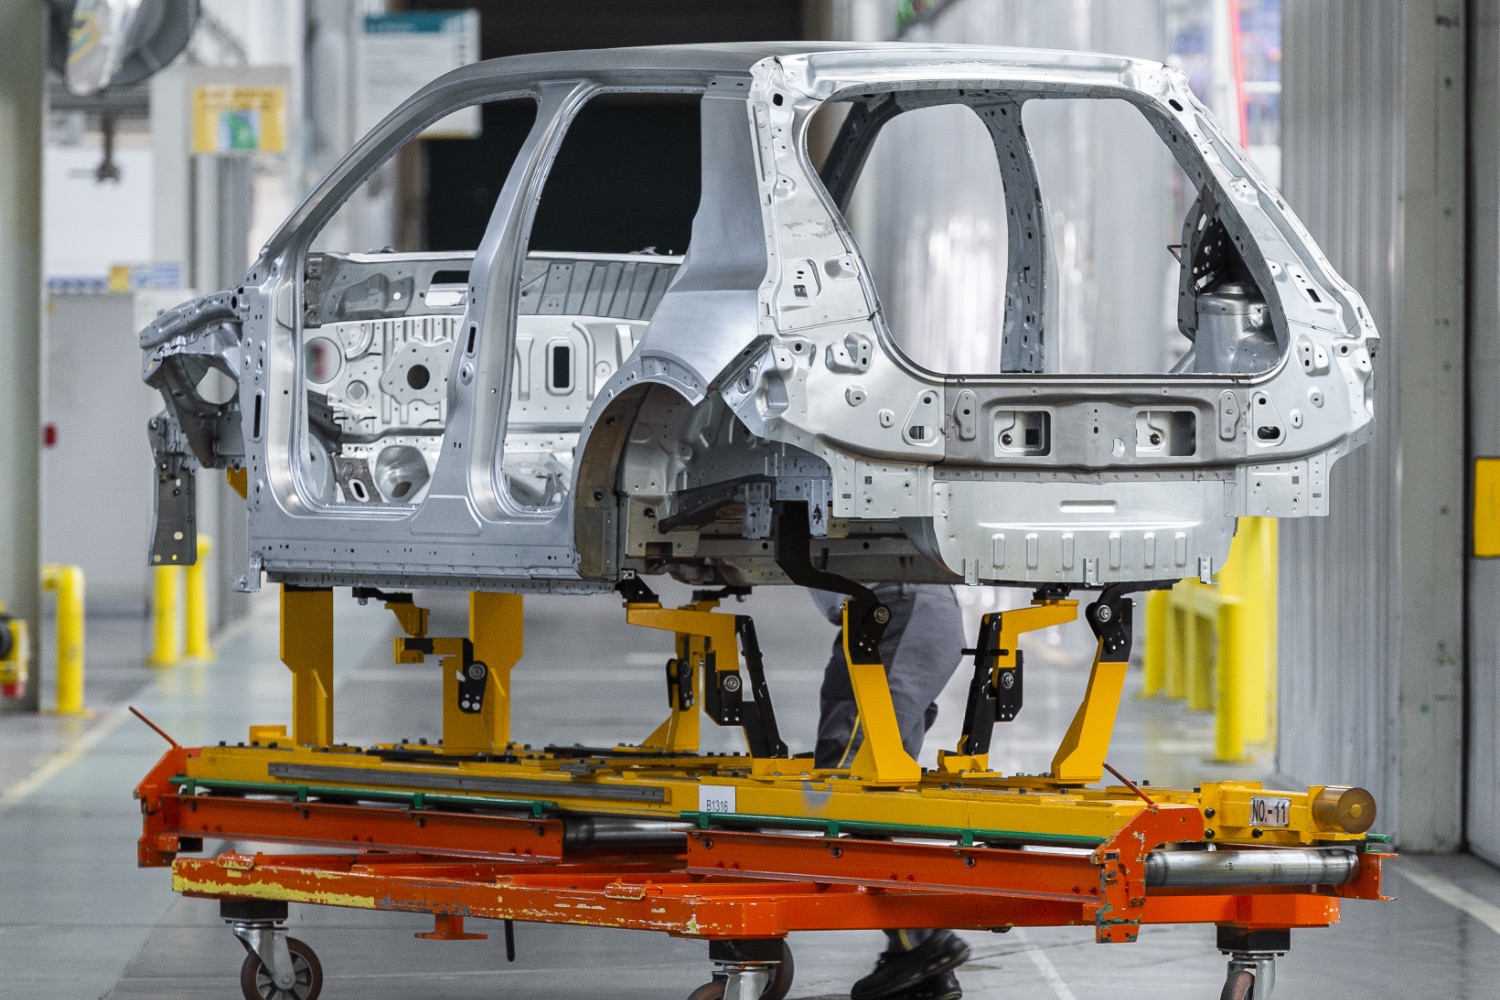 We peek behind the scenes as Renault 5 prepares for full production